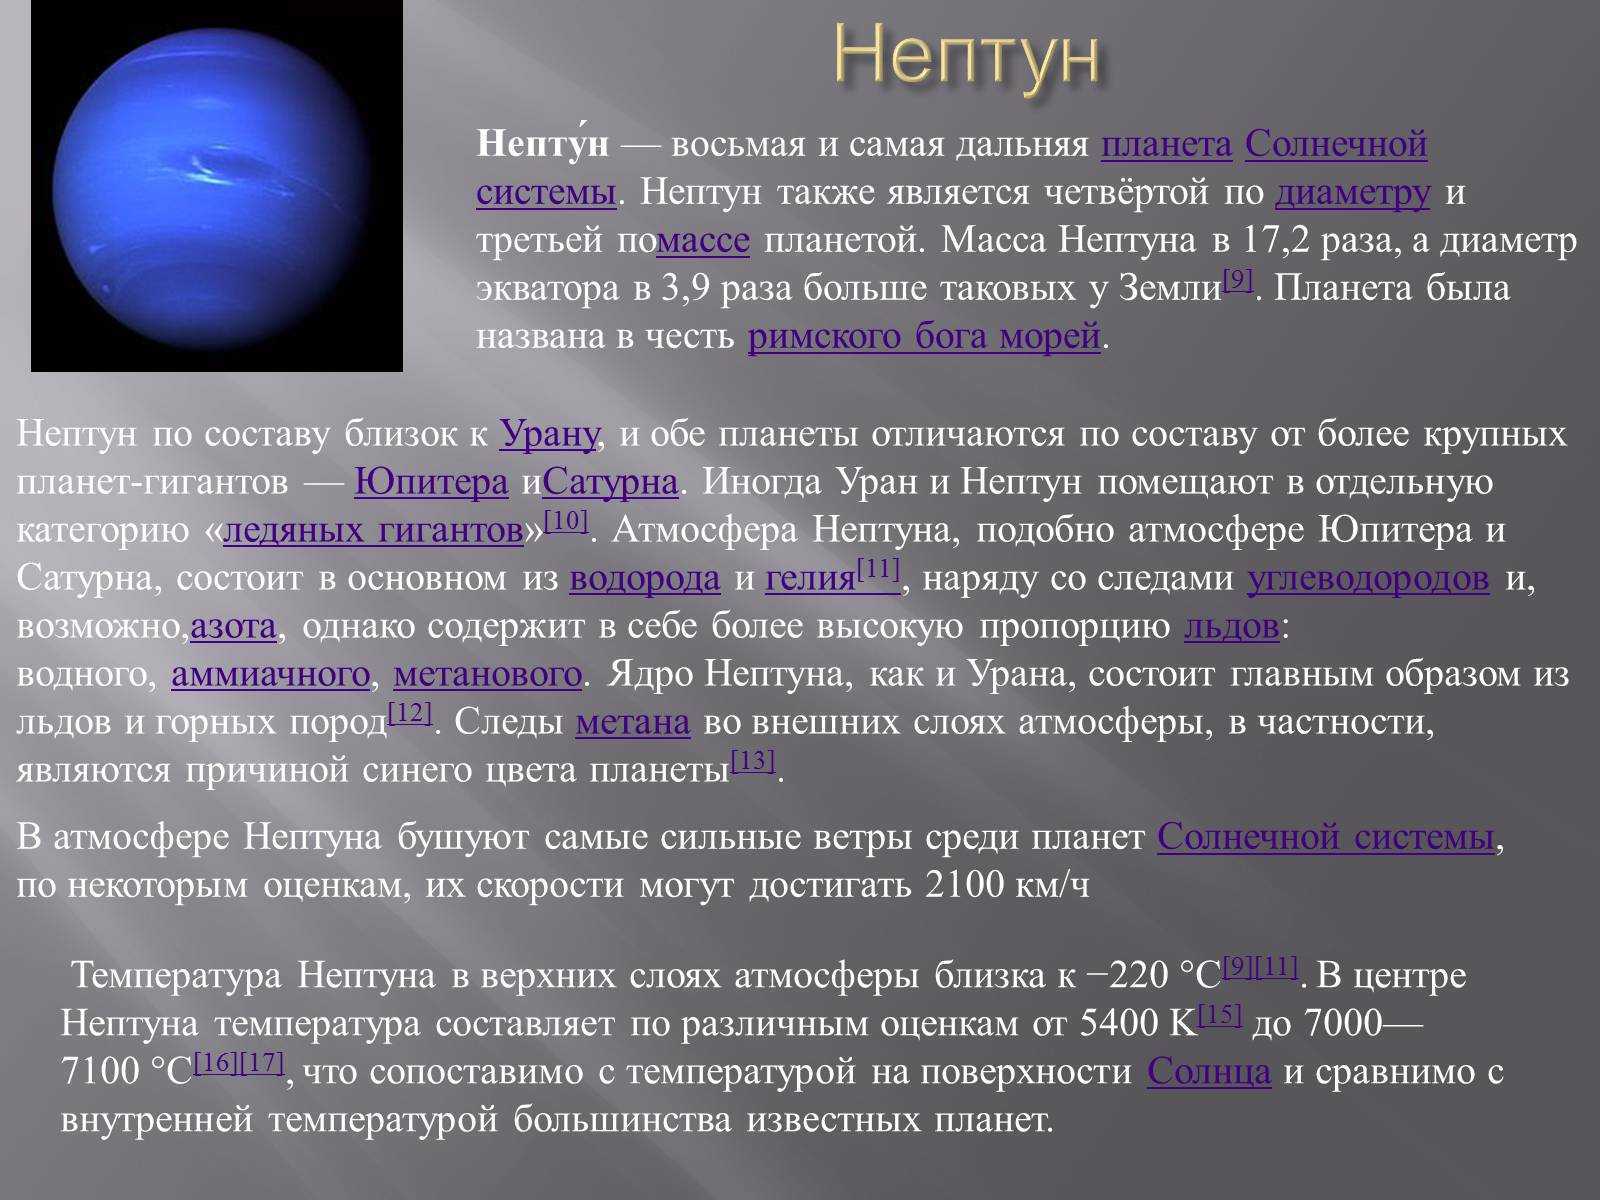 Температура поверхности нептуна